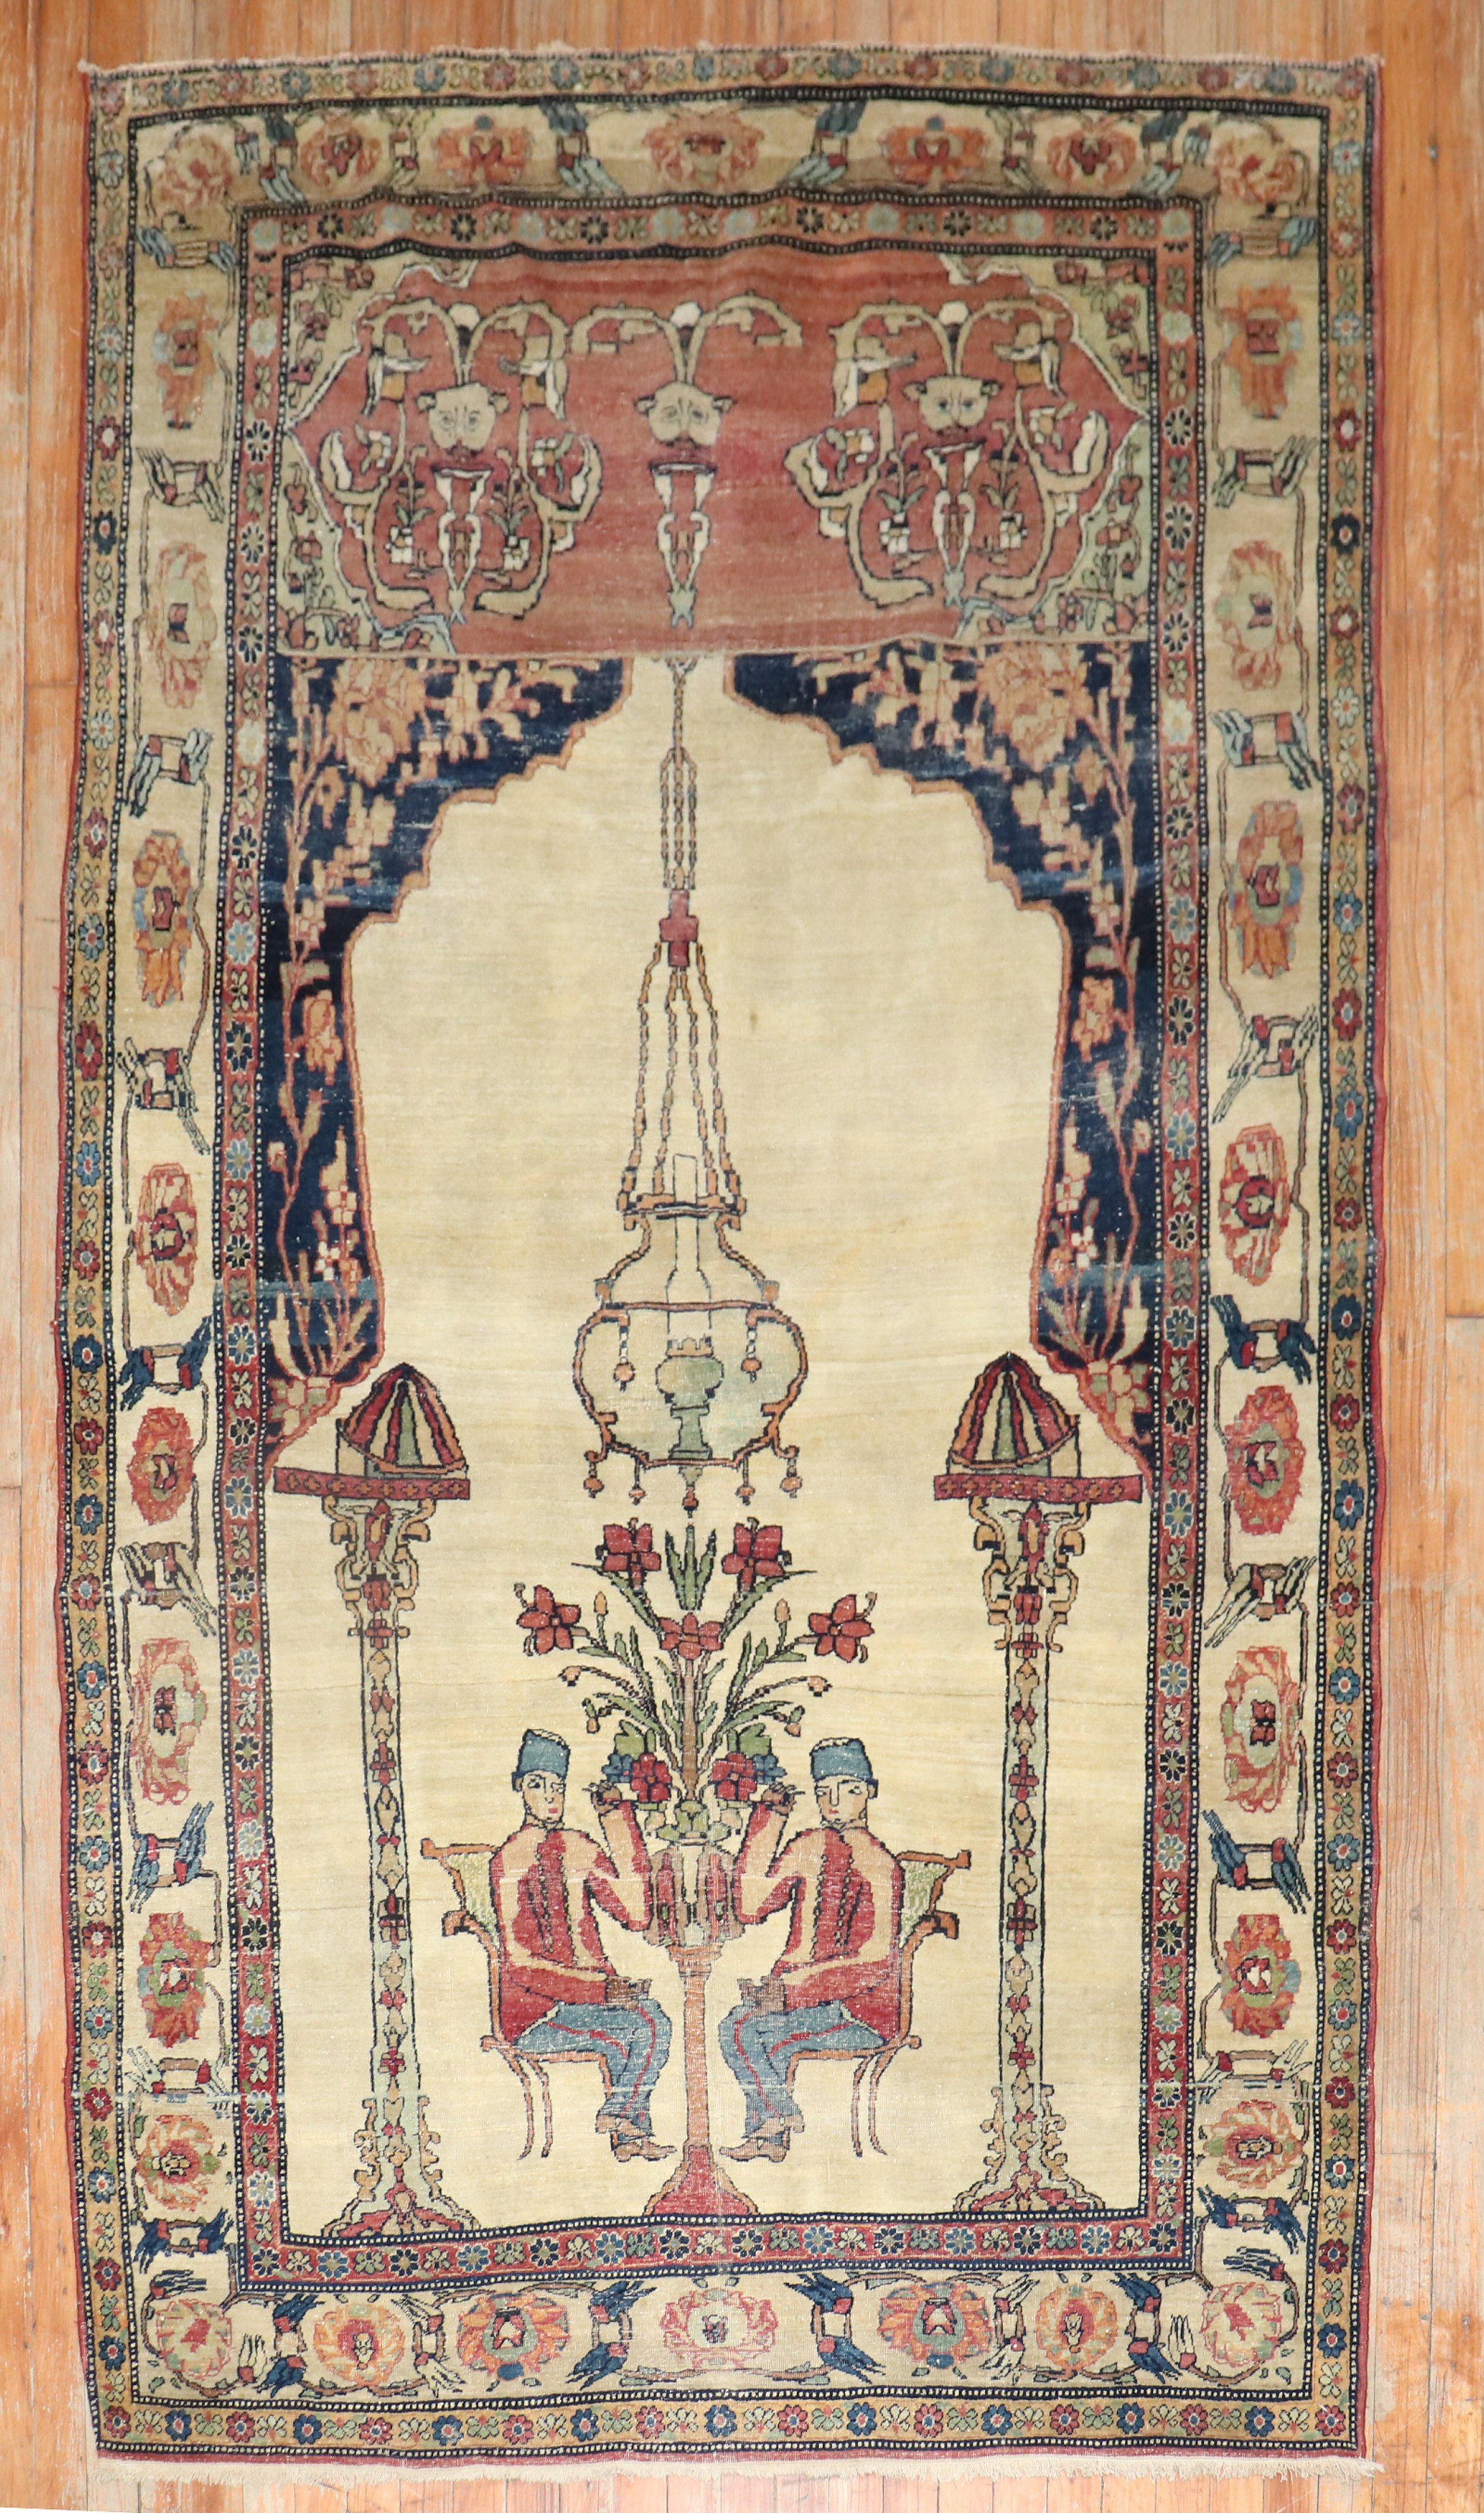 Late 19th century Persian Lavar Kerman Pictorial rug.

Measures: 4'7'' x 8'.